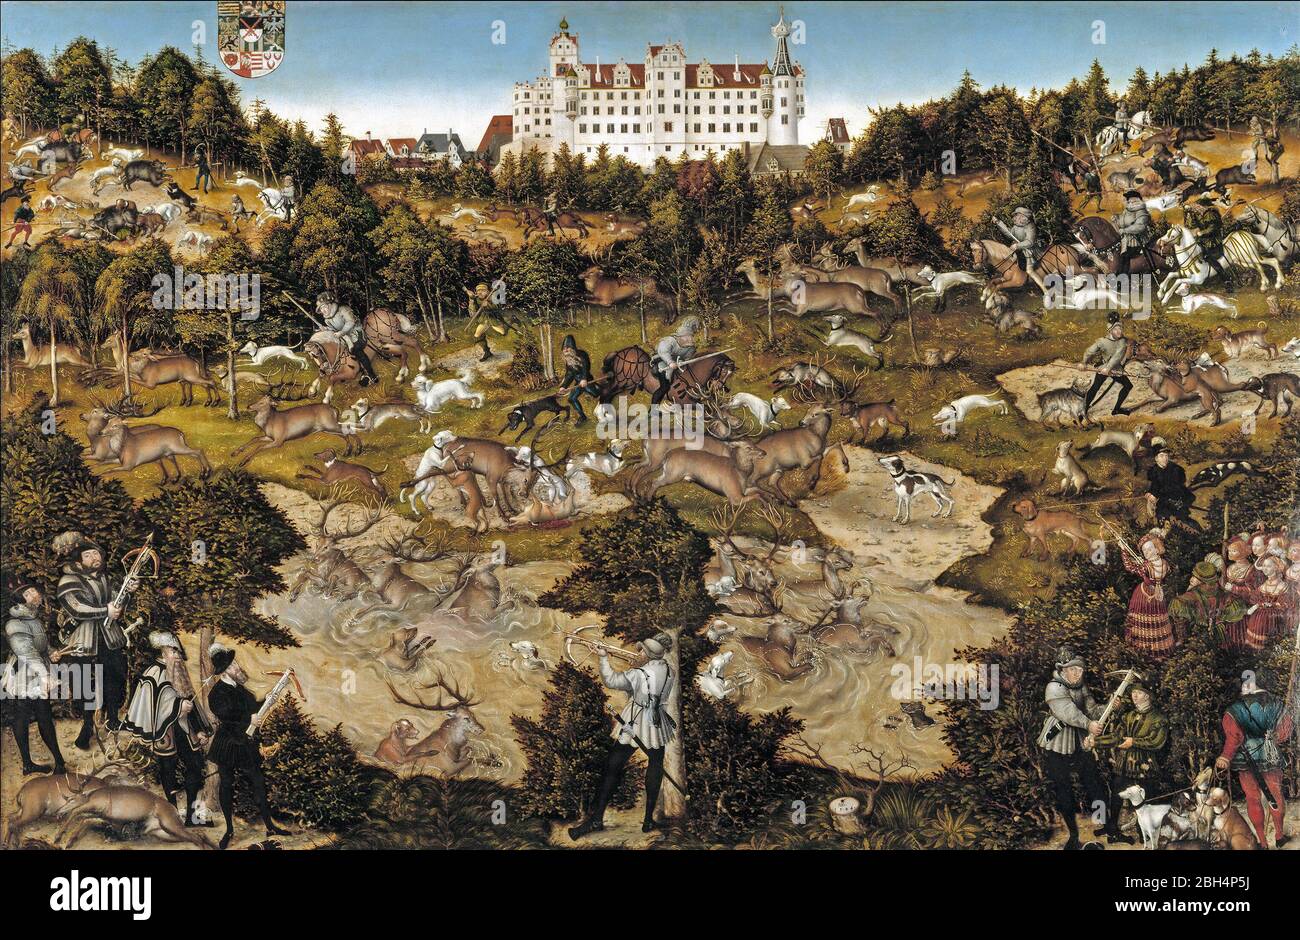 Caza en honor de Carlos V en el Castillo de Torgau - Lucas Cranach el Viejo o Lucas Cranach el joven, alrededor de 1544 Foto de stock